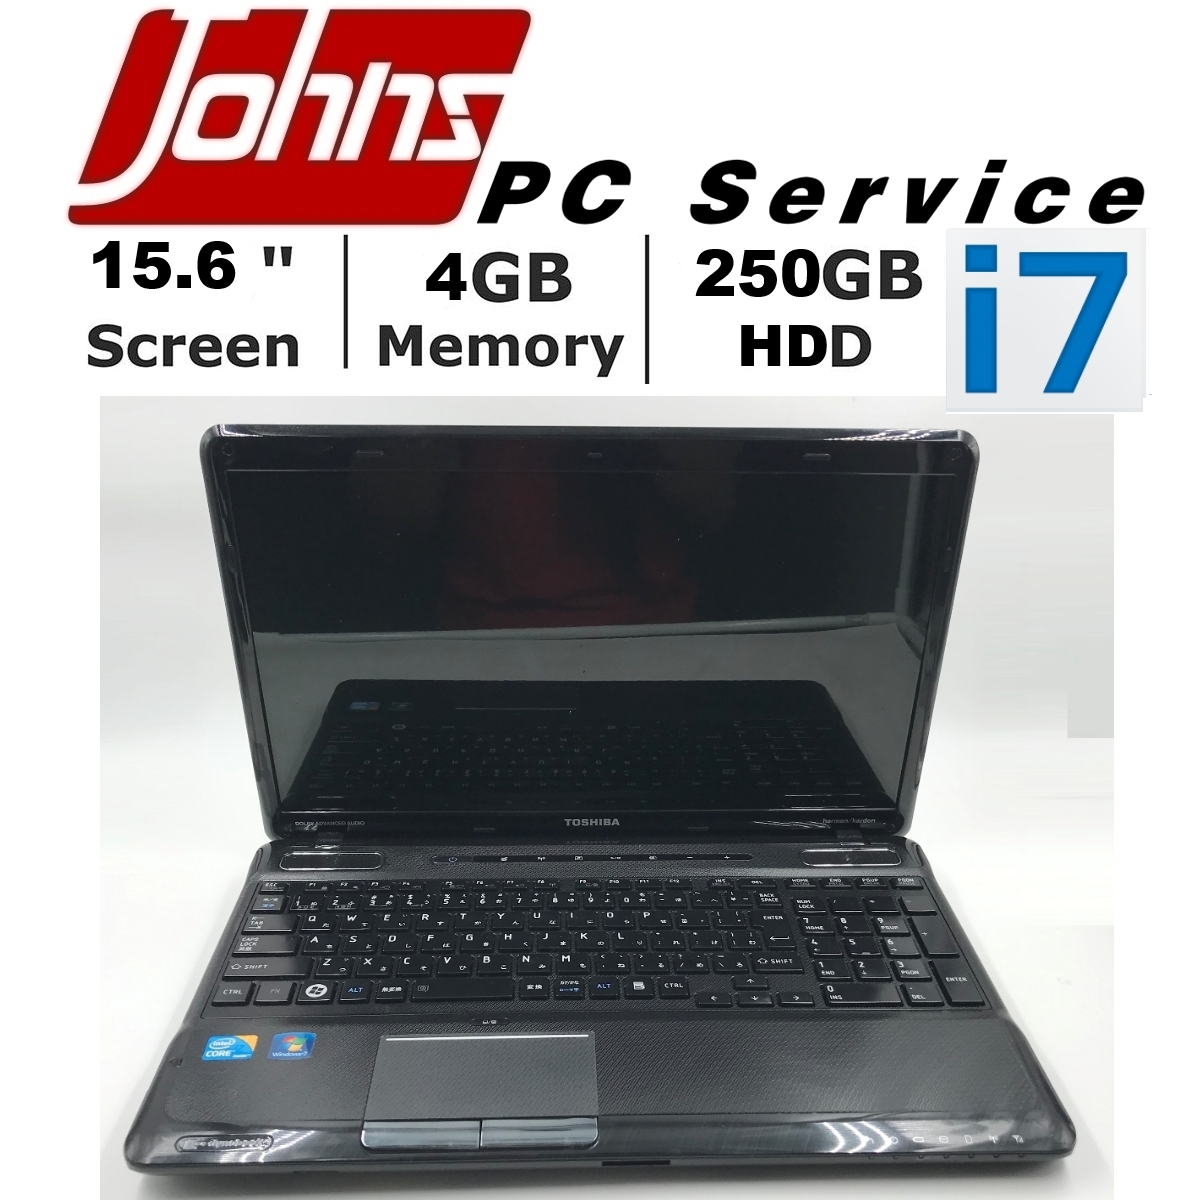 โน๊ตบุ๊ค laptop HP 6550 i5 15.6นิ้ว // Toshiba i5/i7 15.6นิ้ว โน๊ตบุ๊คมือสอง hp notebook/asus/acer ราคาถูกๆ มือสอง โน็ตบุ๊คมือ2 โน้ตบุ๊คถูกๆ โน๊ตบุ๊คมือสอง